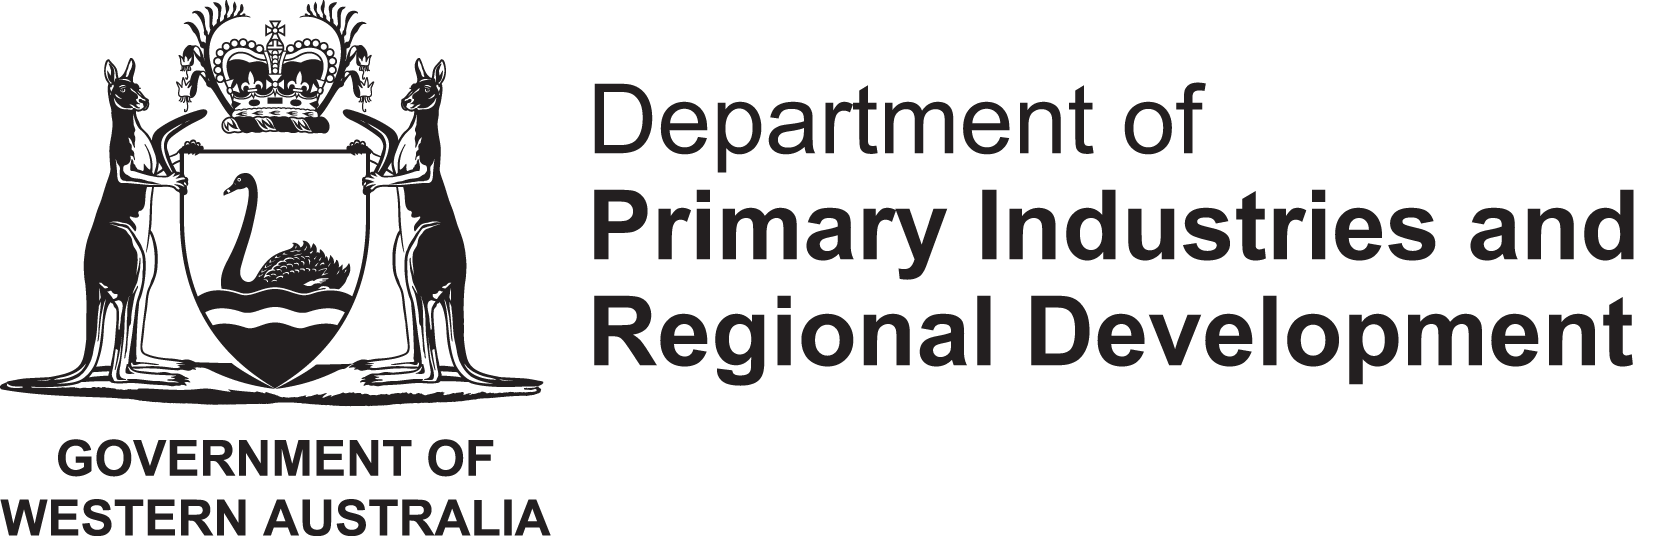 DPIRD logo